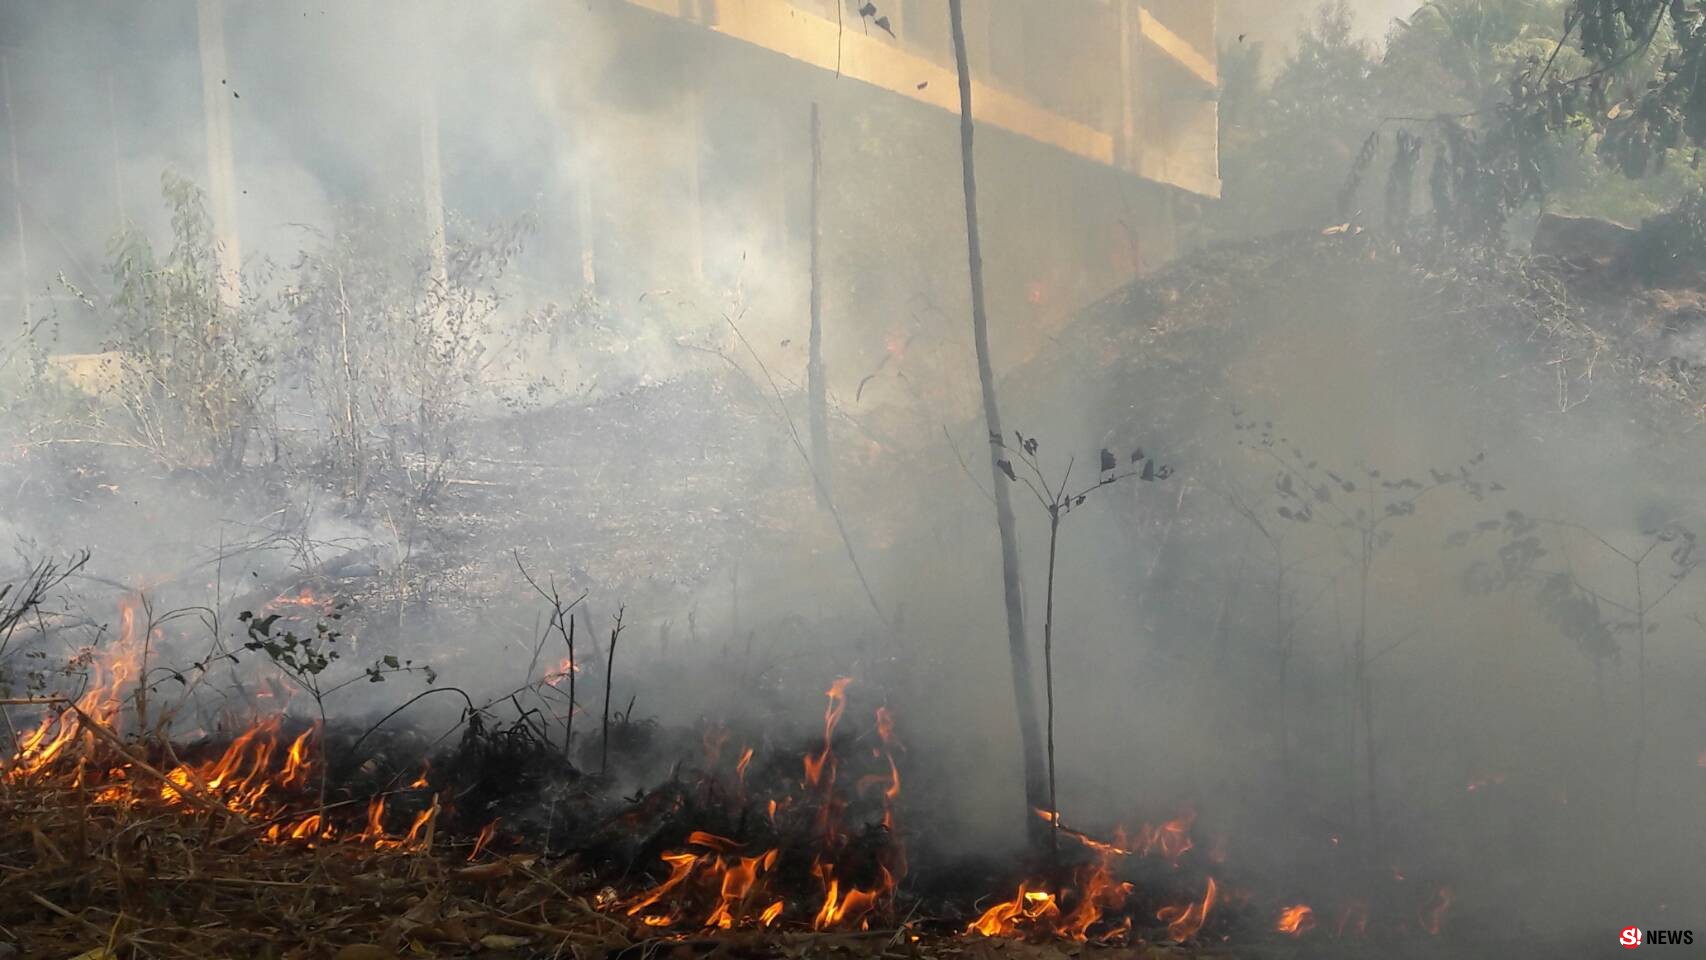 โคราช-โคราชไฟไหม้หญ้าข้างโรงเรียน ระดมรถดับเพลิงเร่งฉีดสกัด หวั่นกระทบครู นักเรียนที่กำลังเรียนหนังสืออยู่